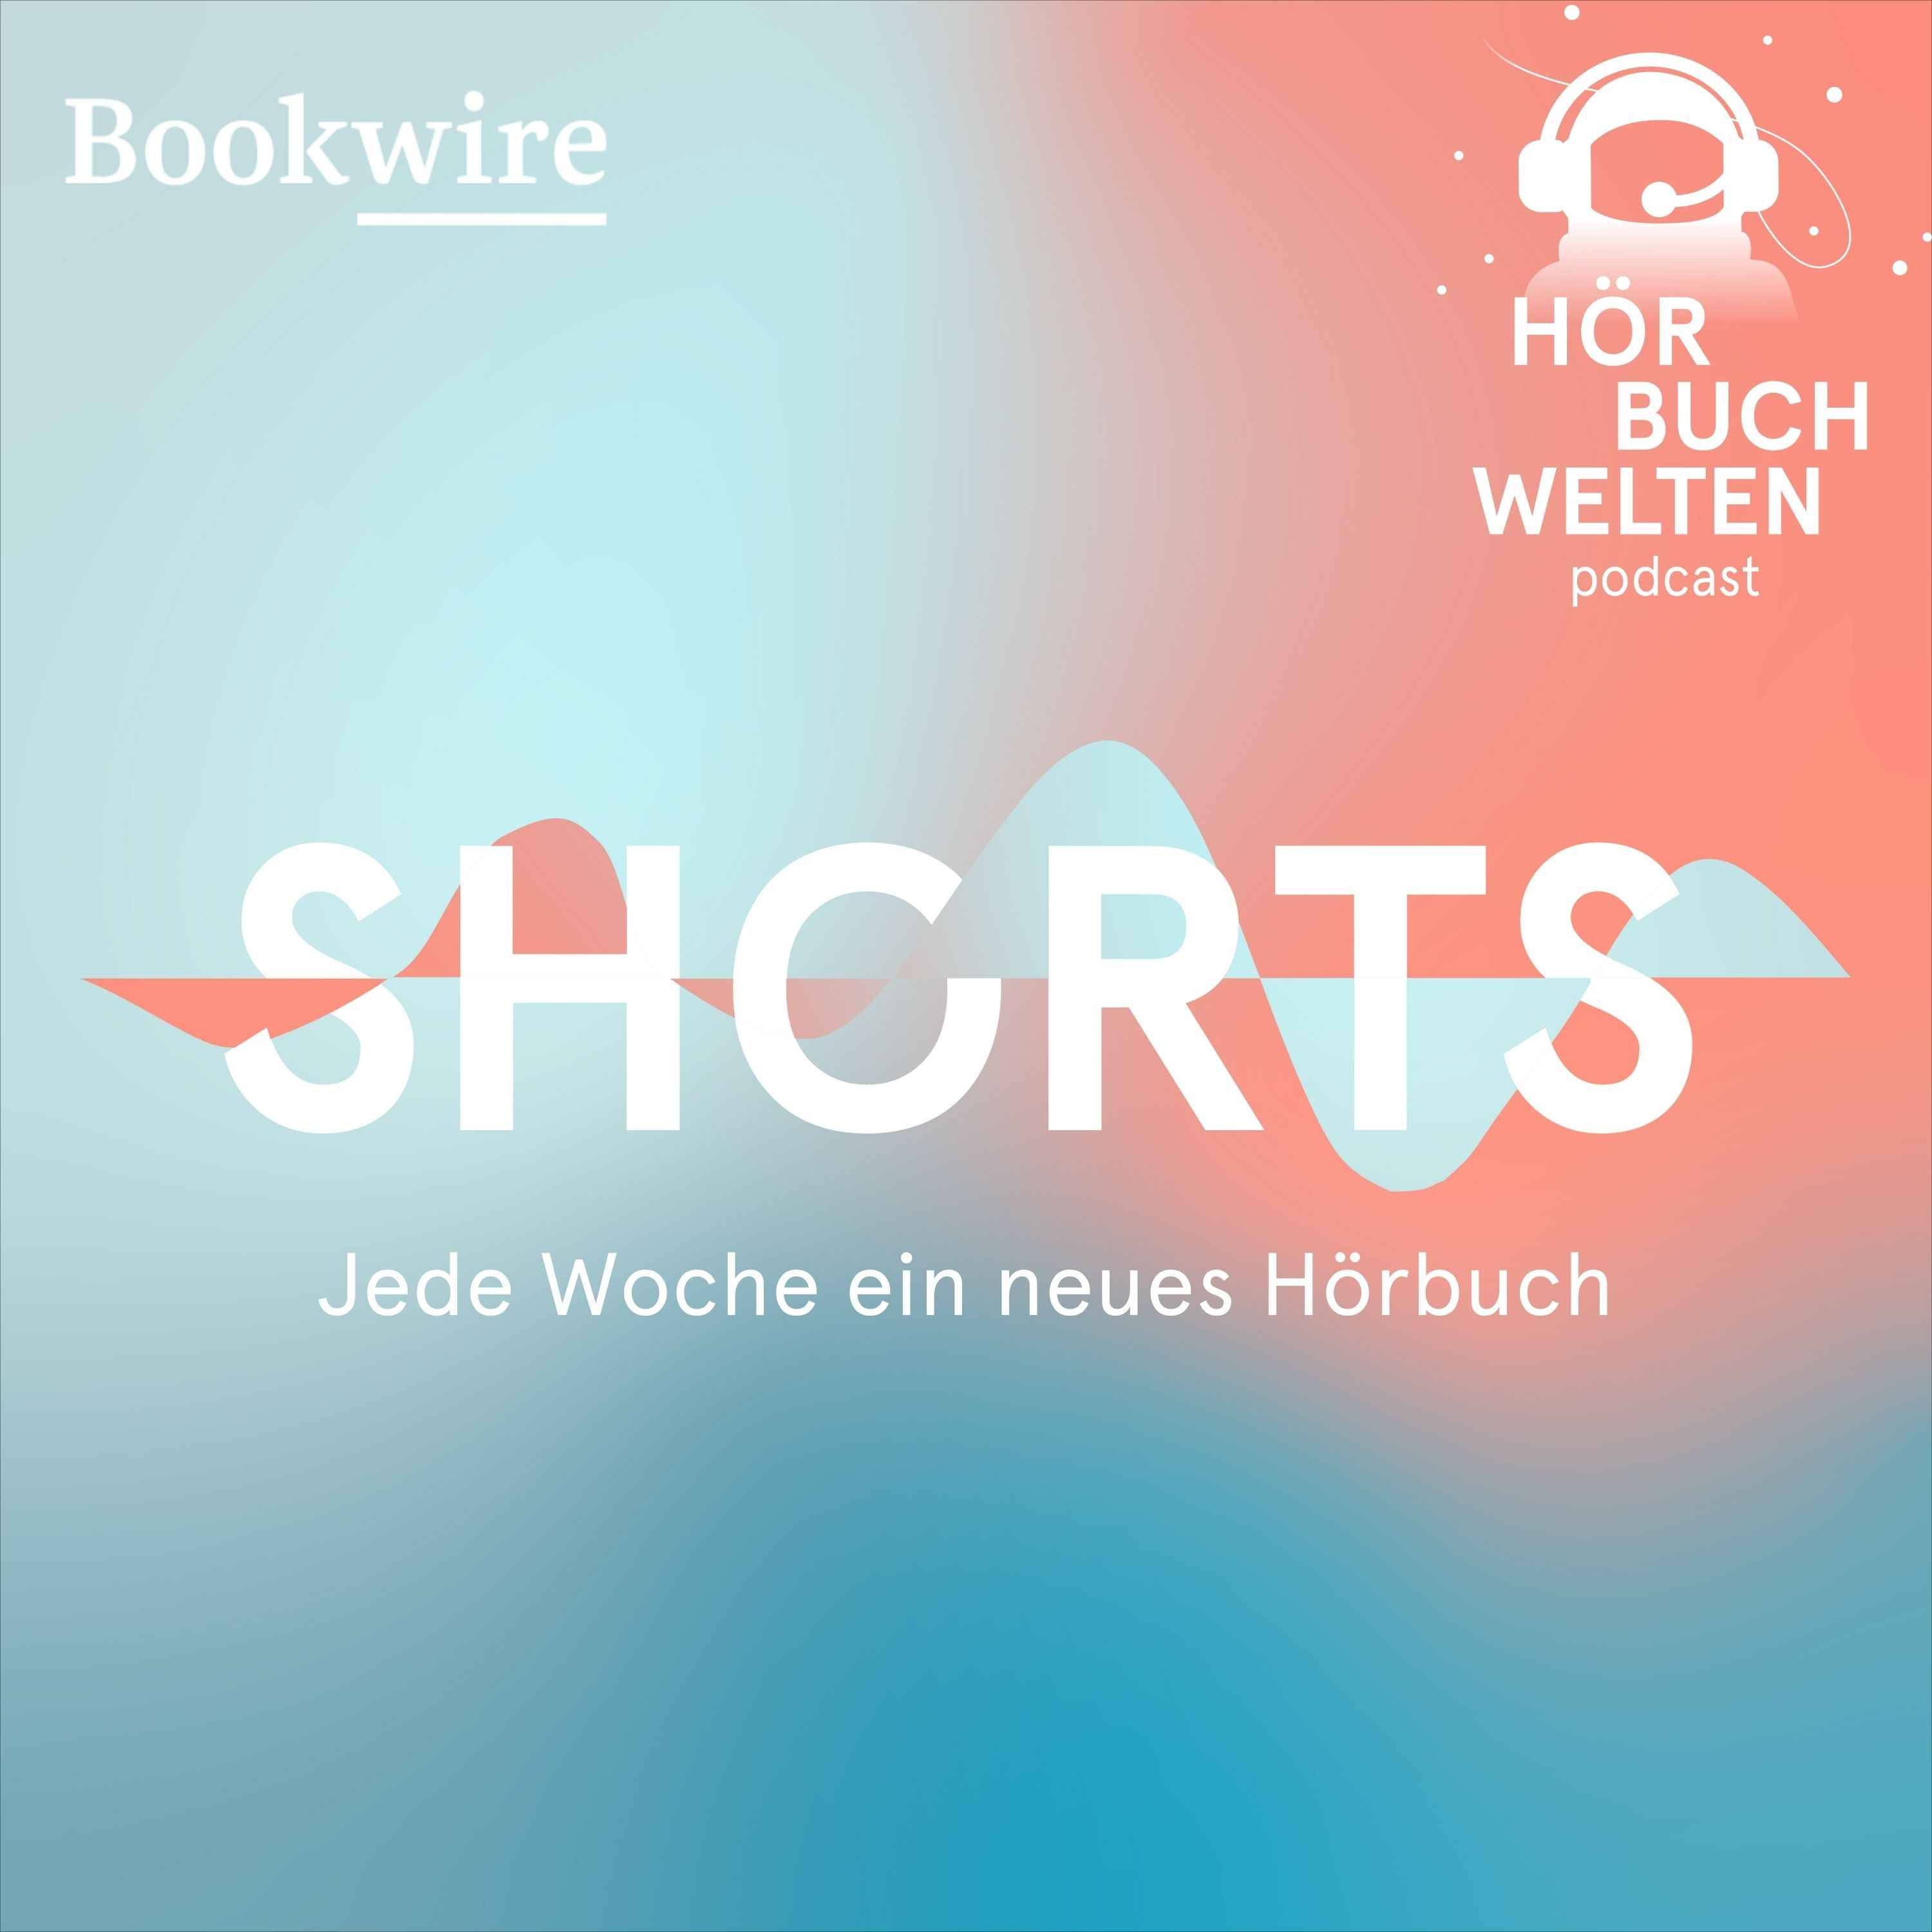 Der Herr der Diebe von Cornelia Funke – Hörbuchwelten Shorts